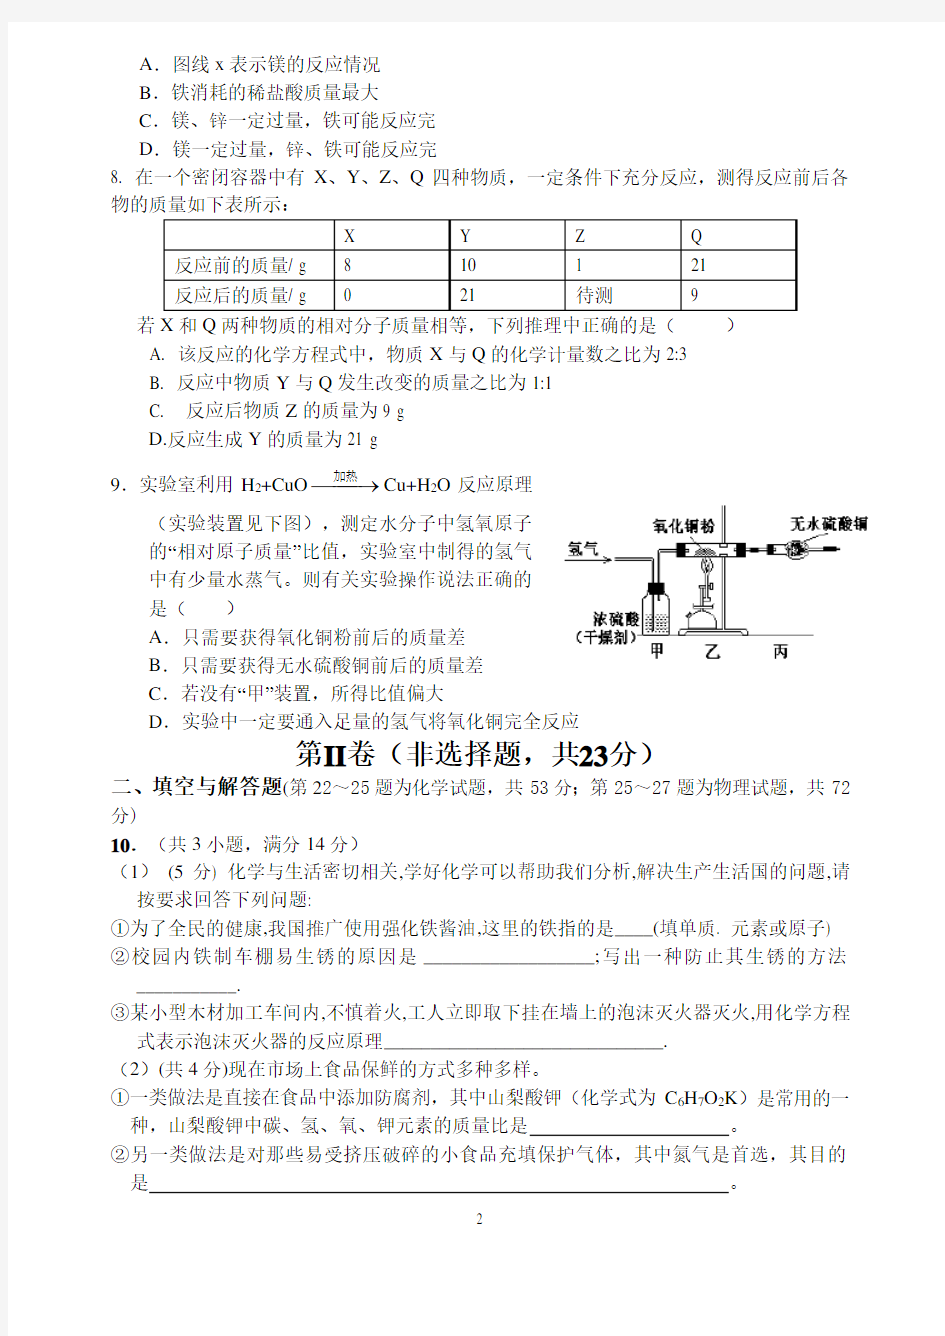 重点高中自主招生考试化学试题(1).pdf